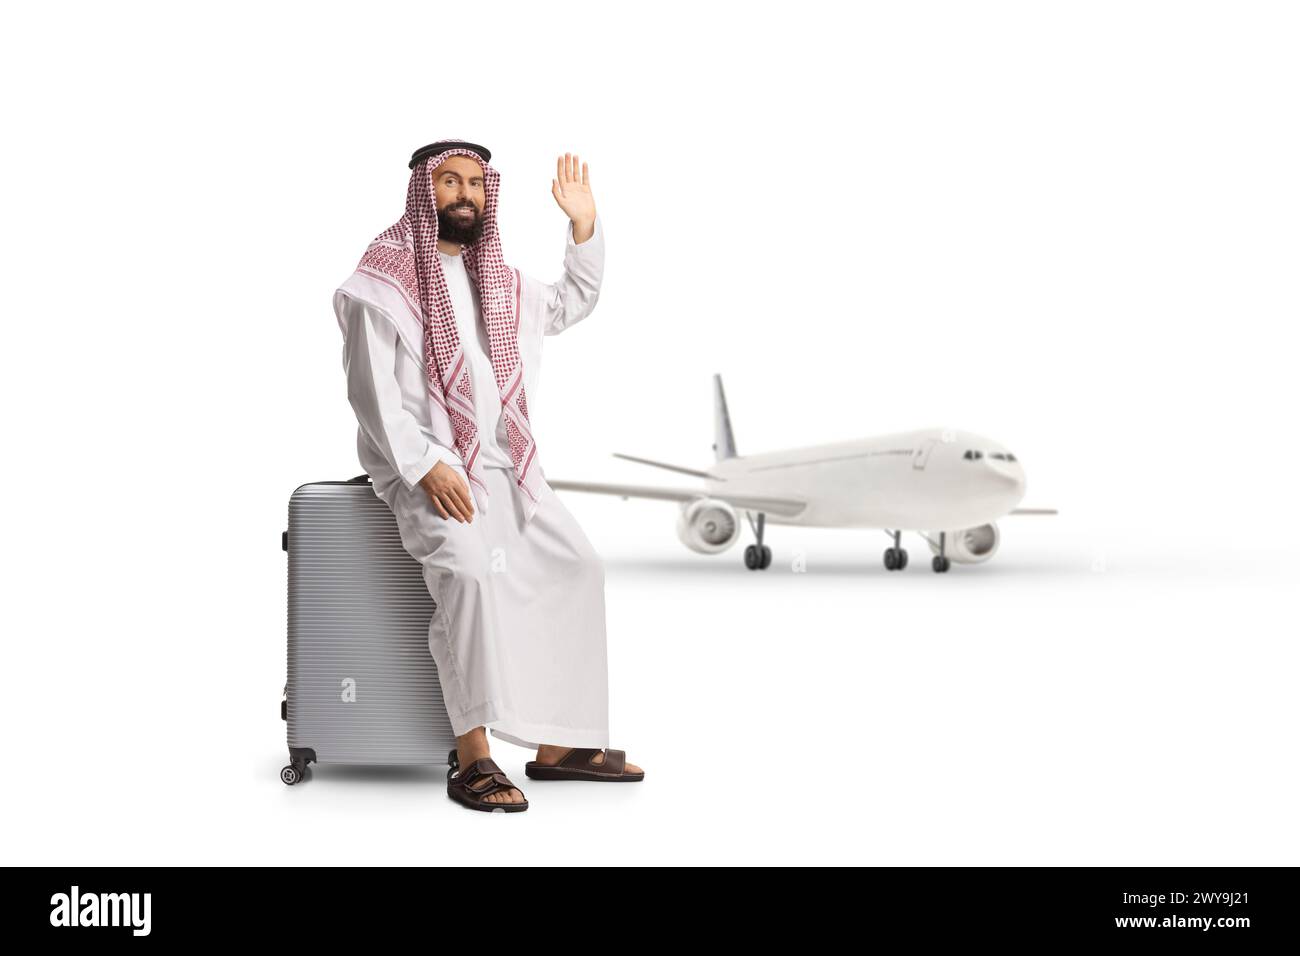 Homme arabe saoudien assis sur une valise près d'un avion et agitant isolé sur fond blanc Banque D'Images